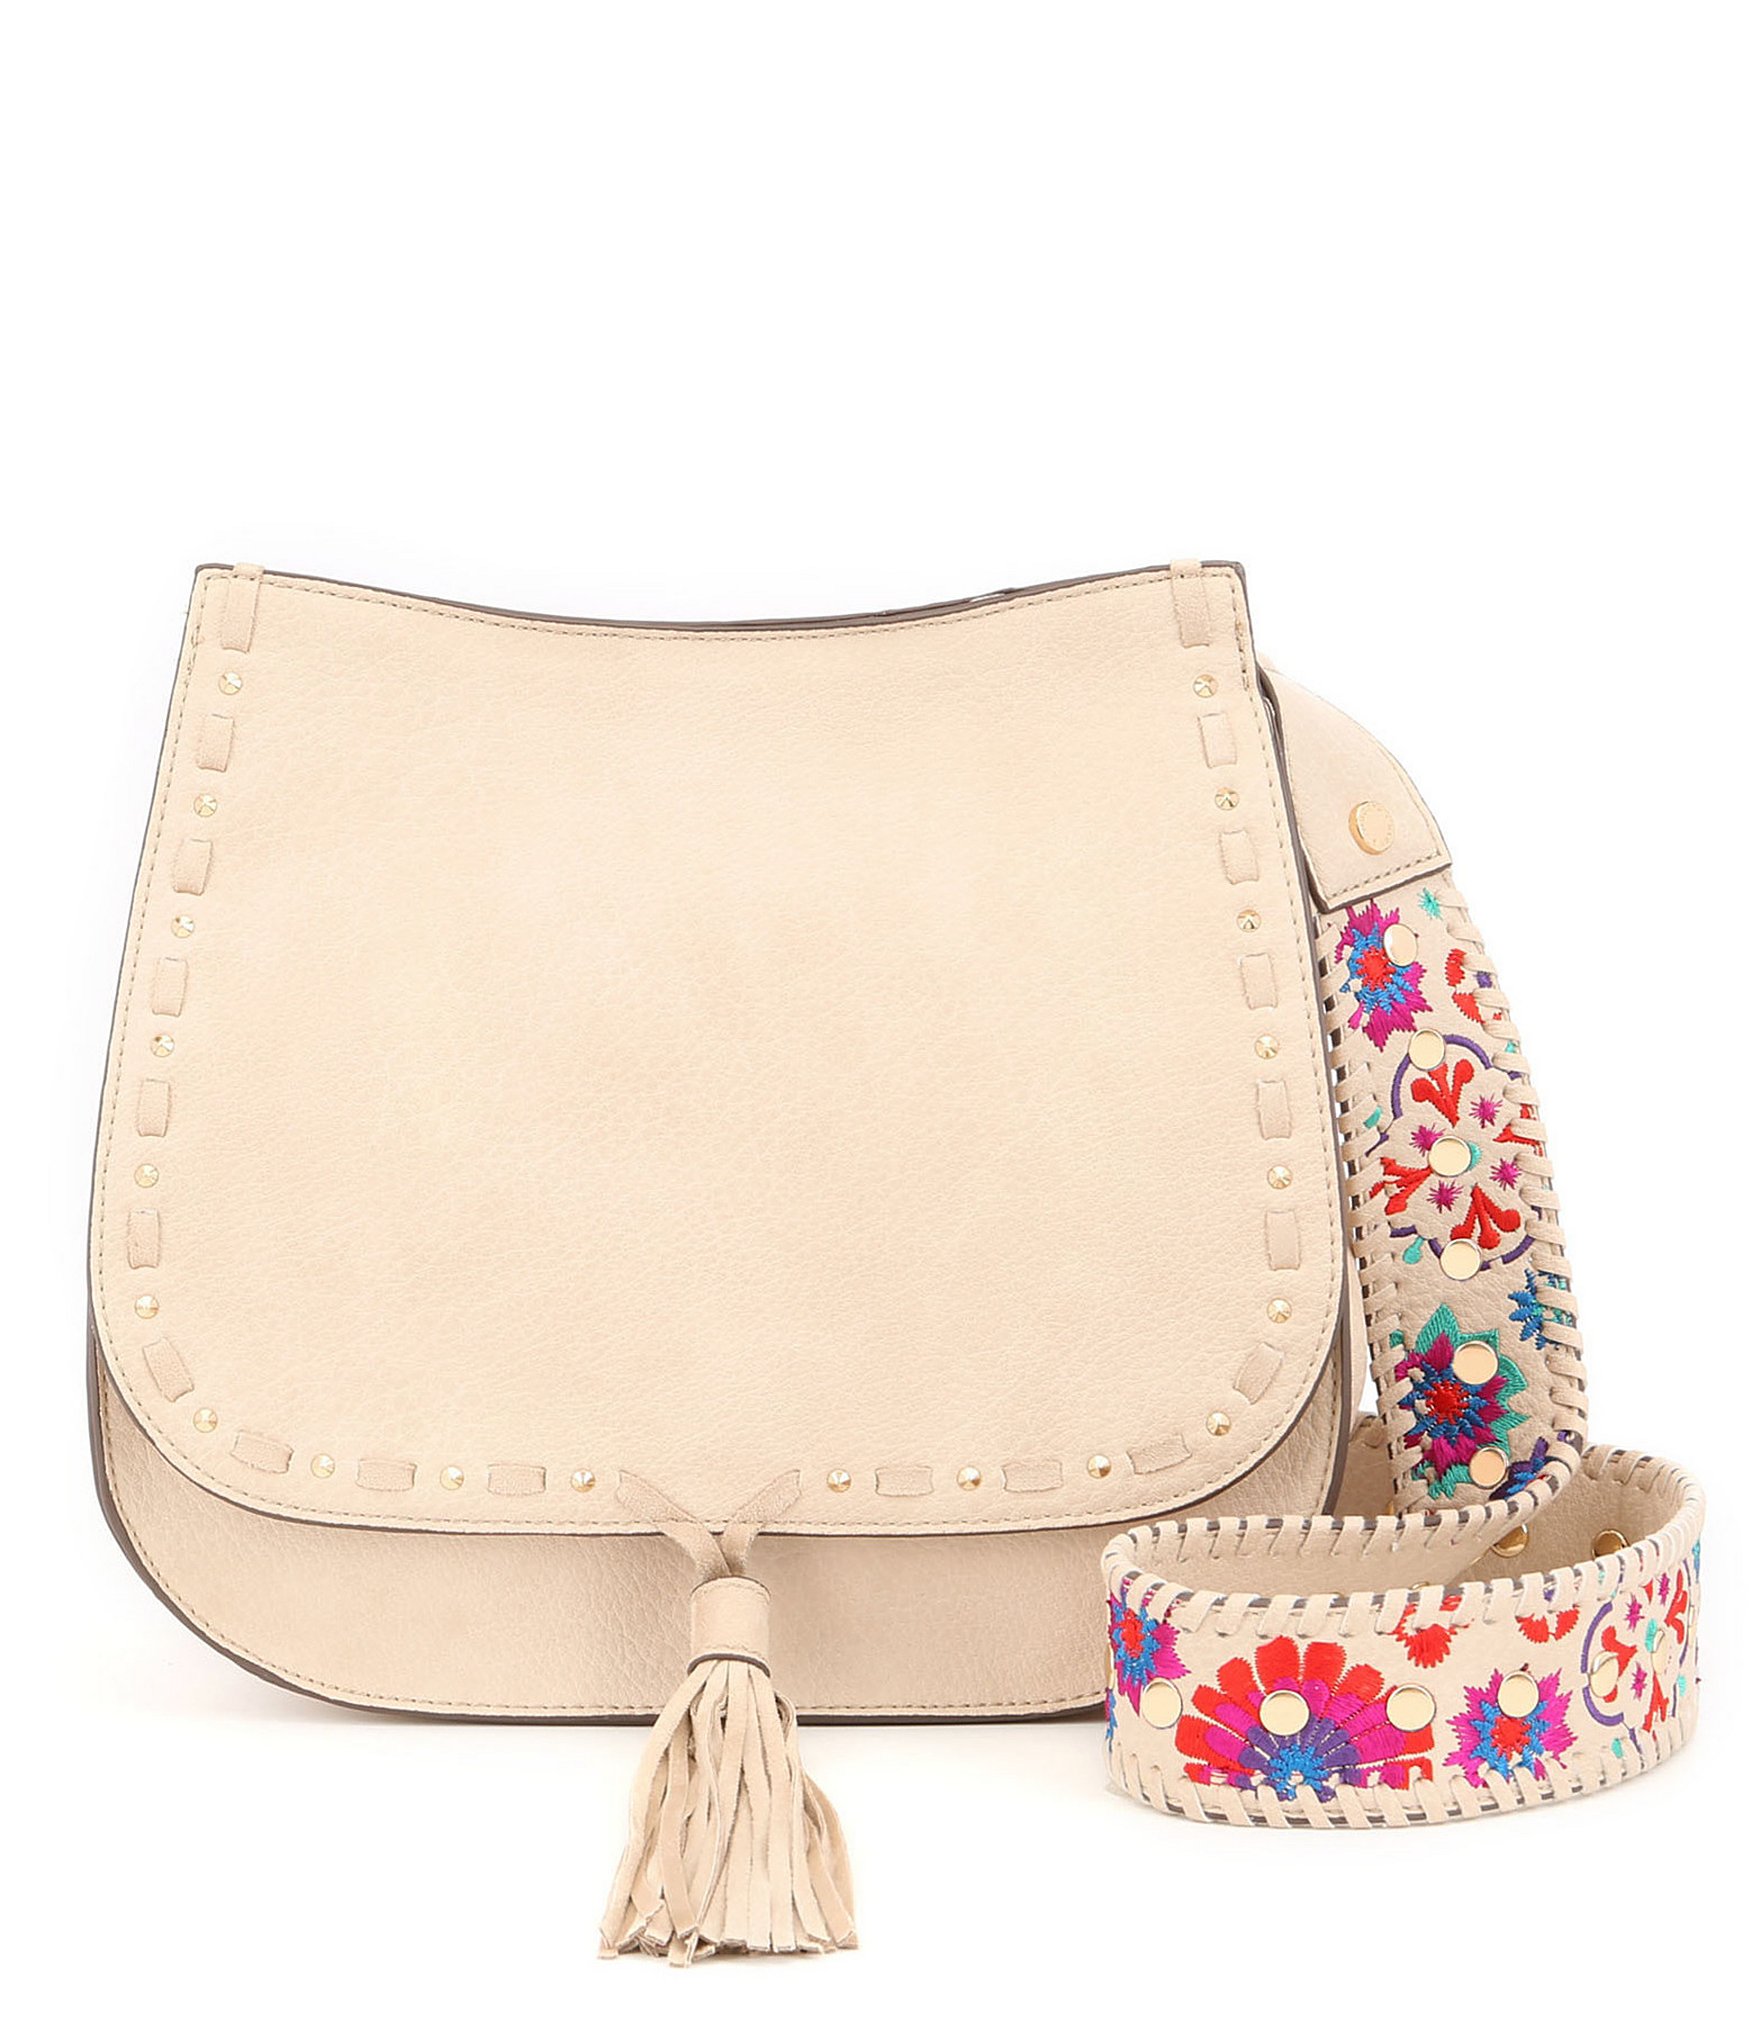 Steve Madden Selena Tasseled Saddle Bag with Floral-Embroidered Strap ...